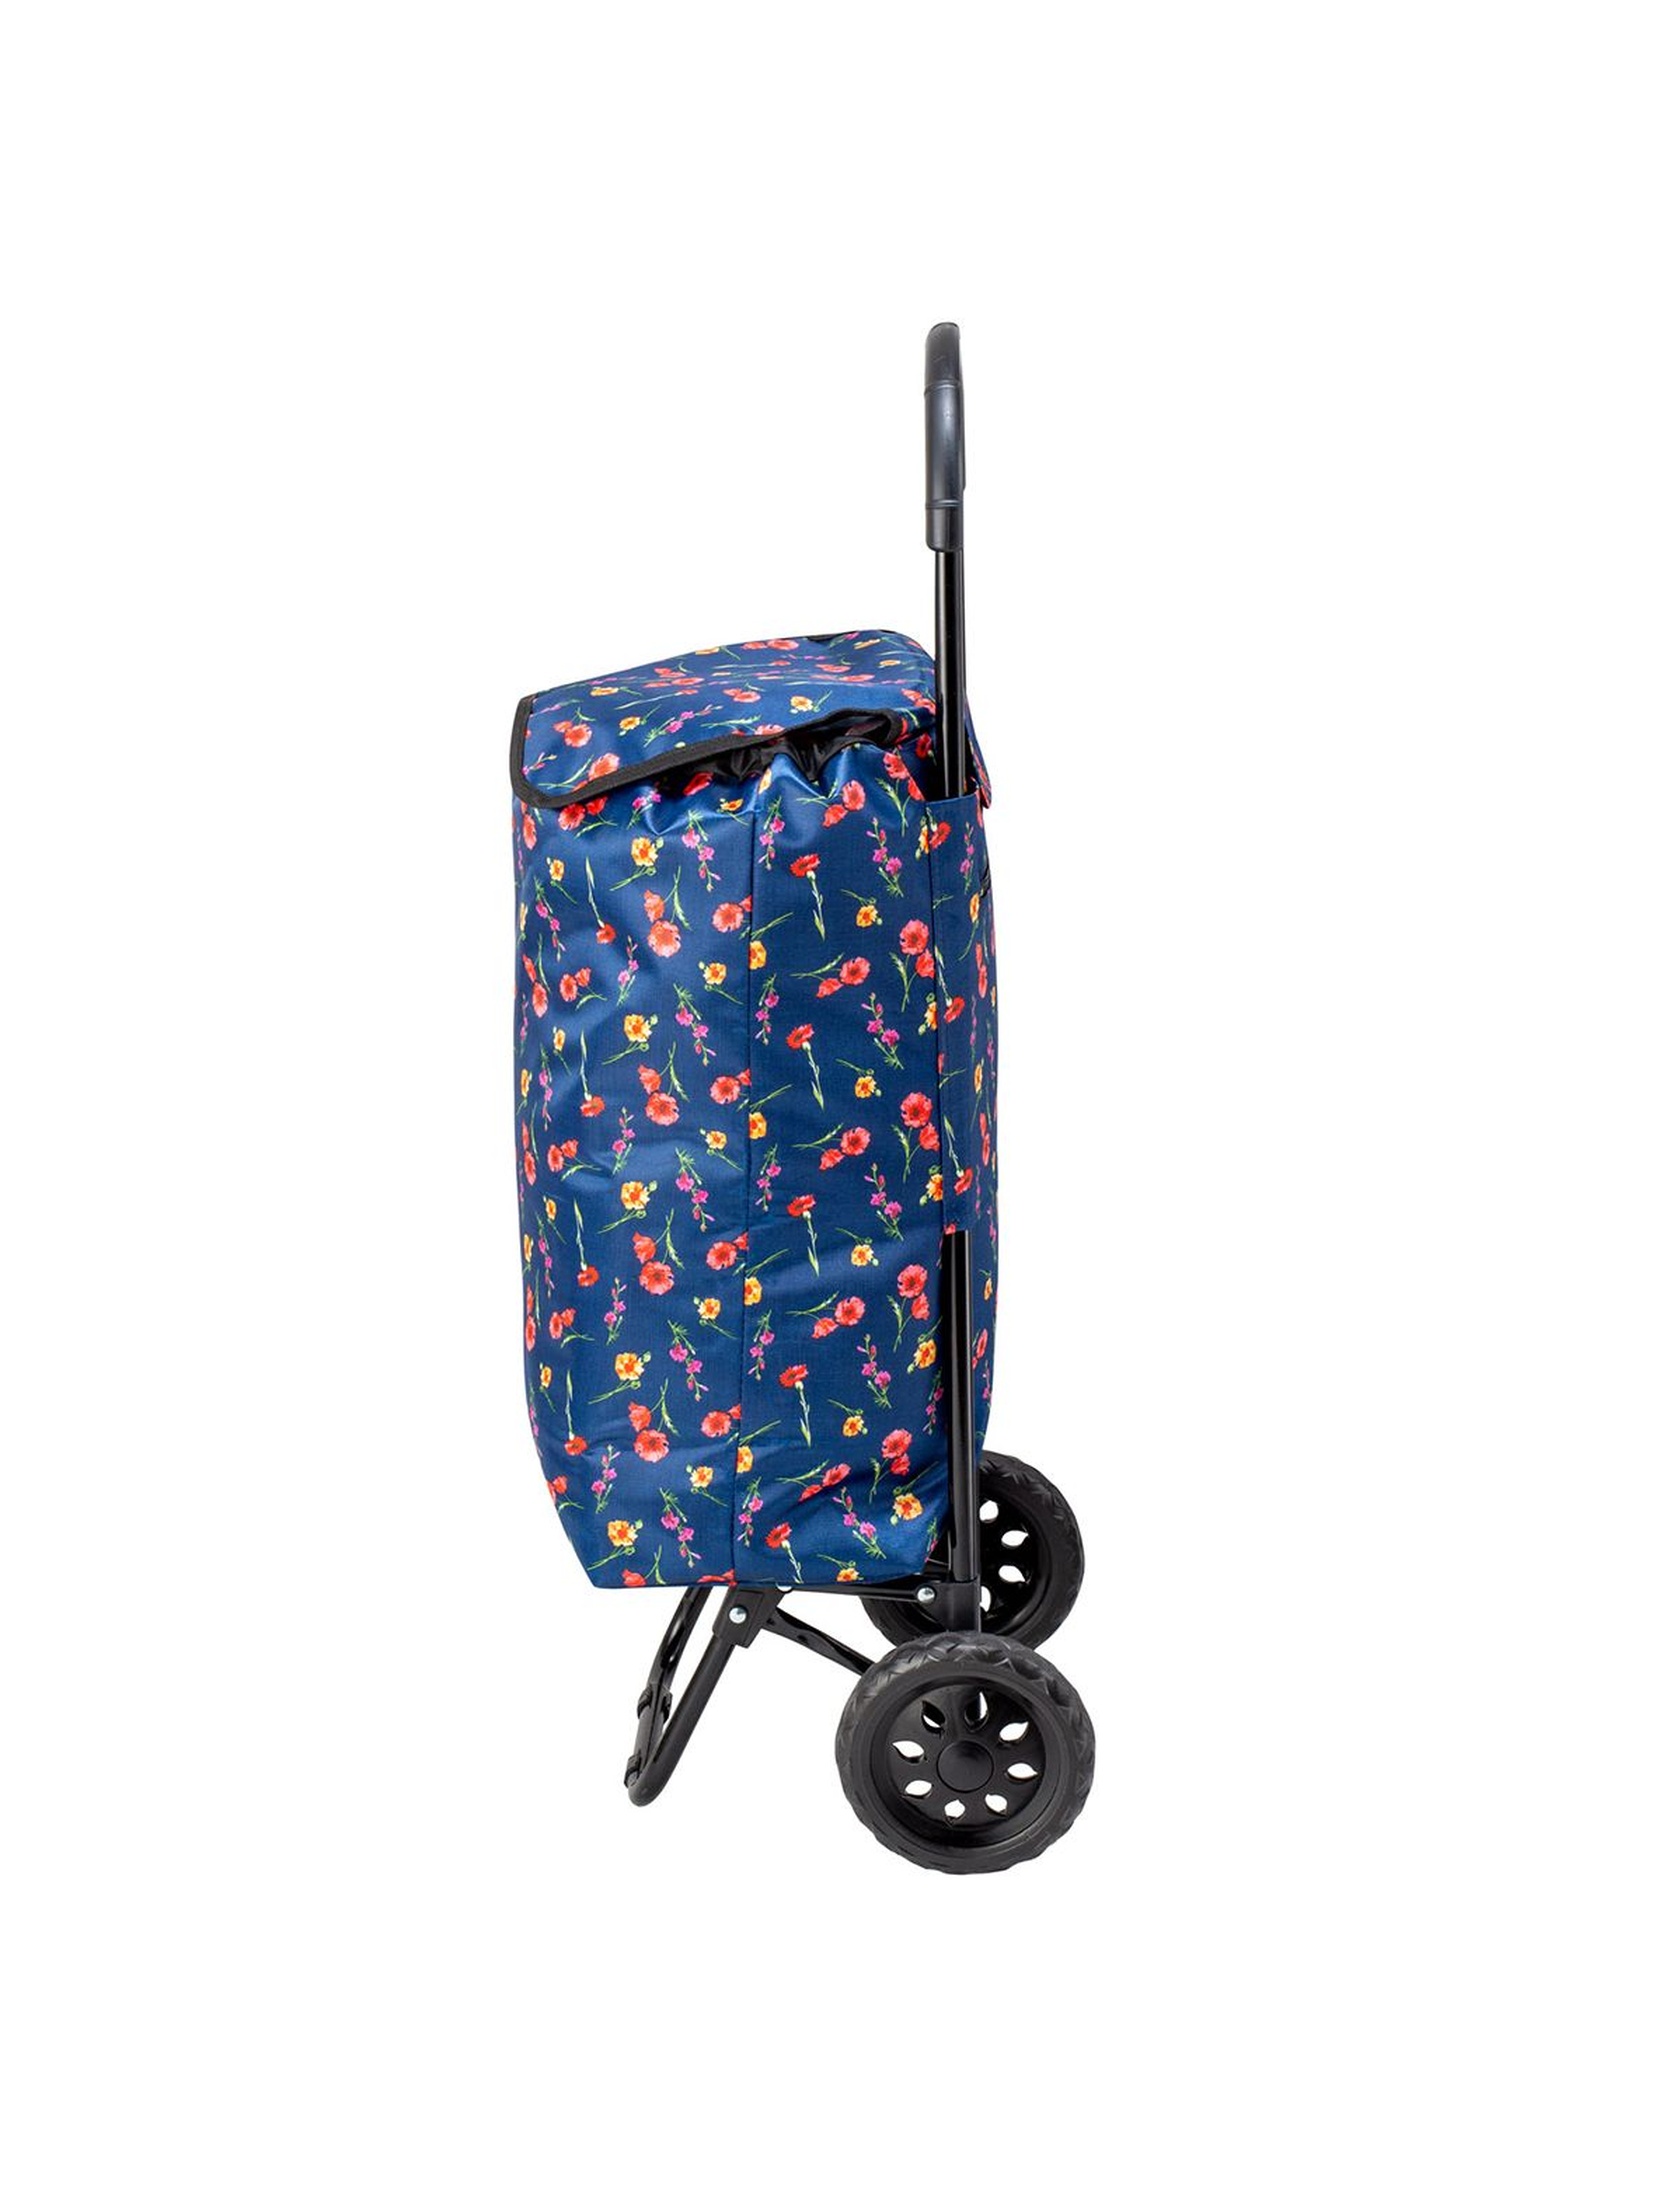 Wózek/torba na zakupy na kołach granatowa w kwiaty